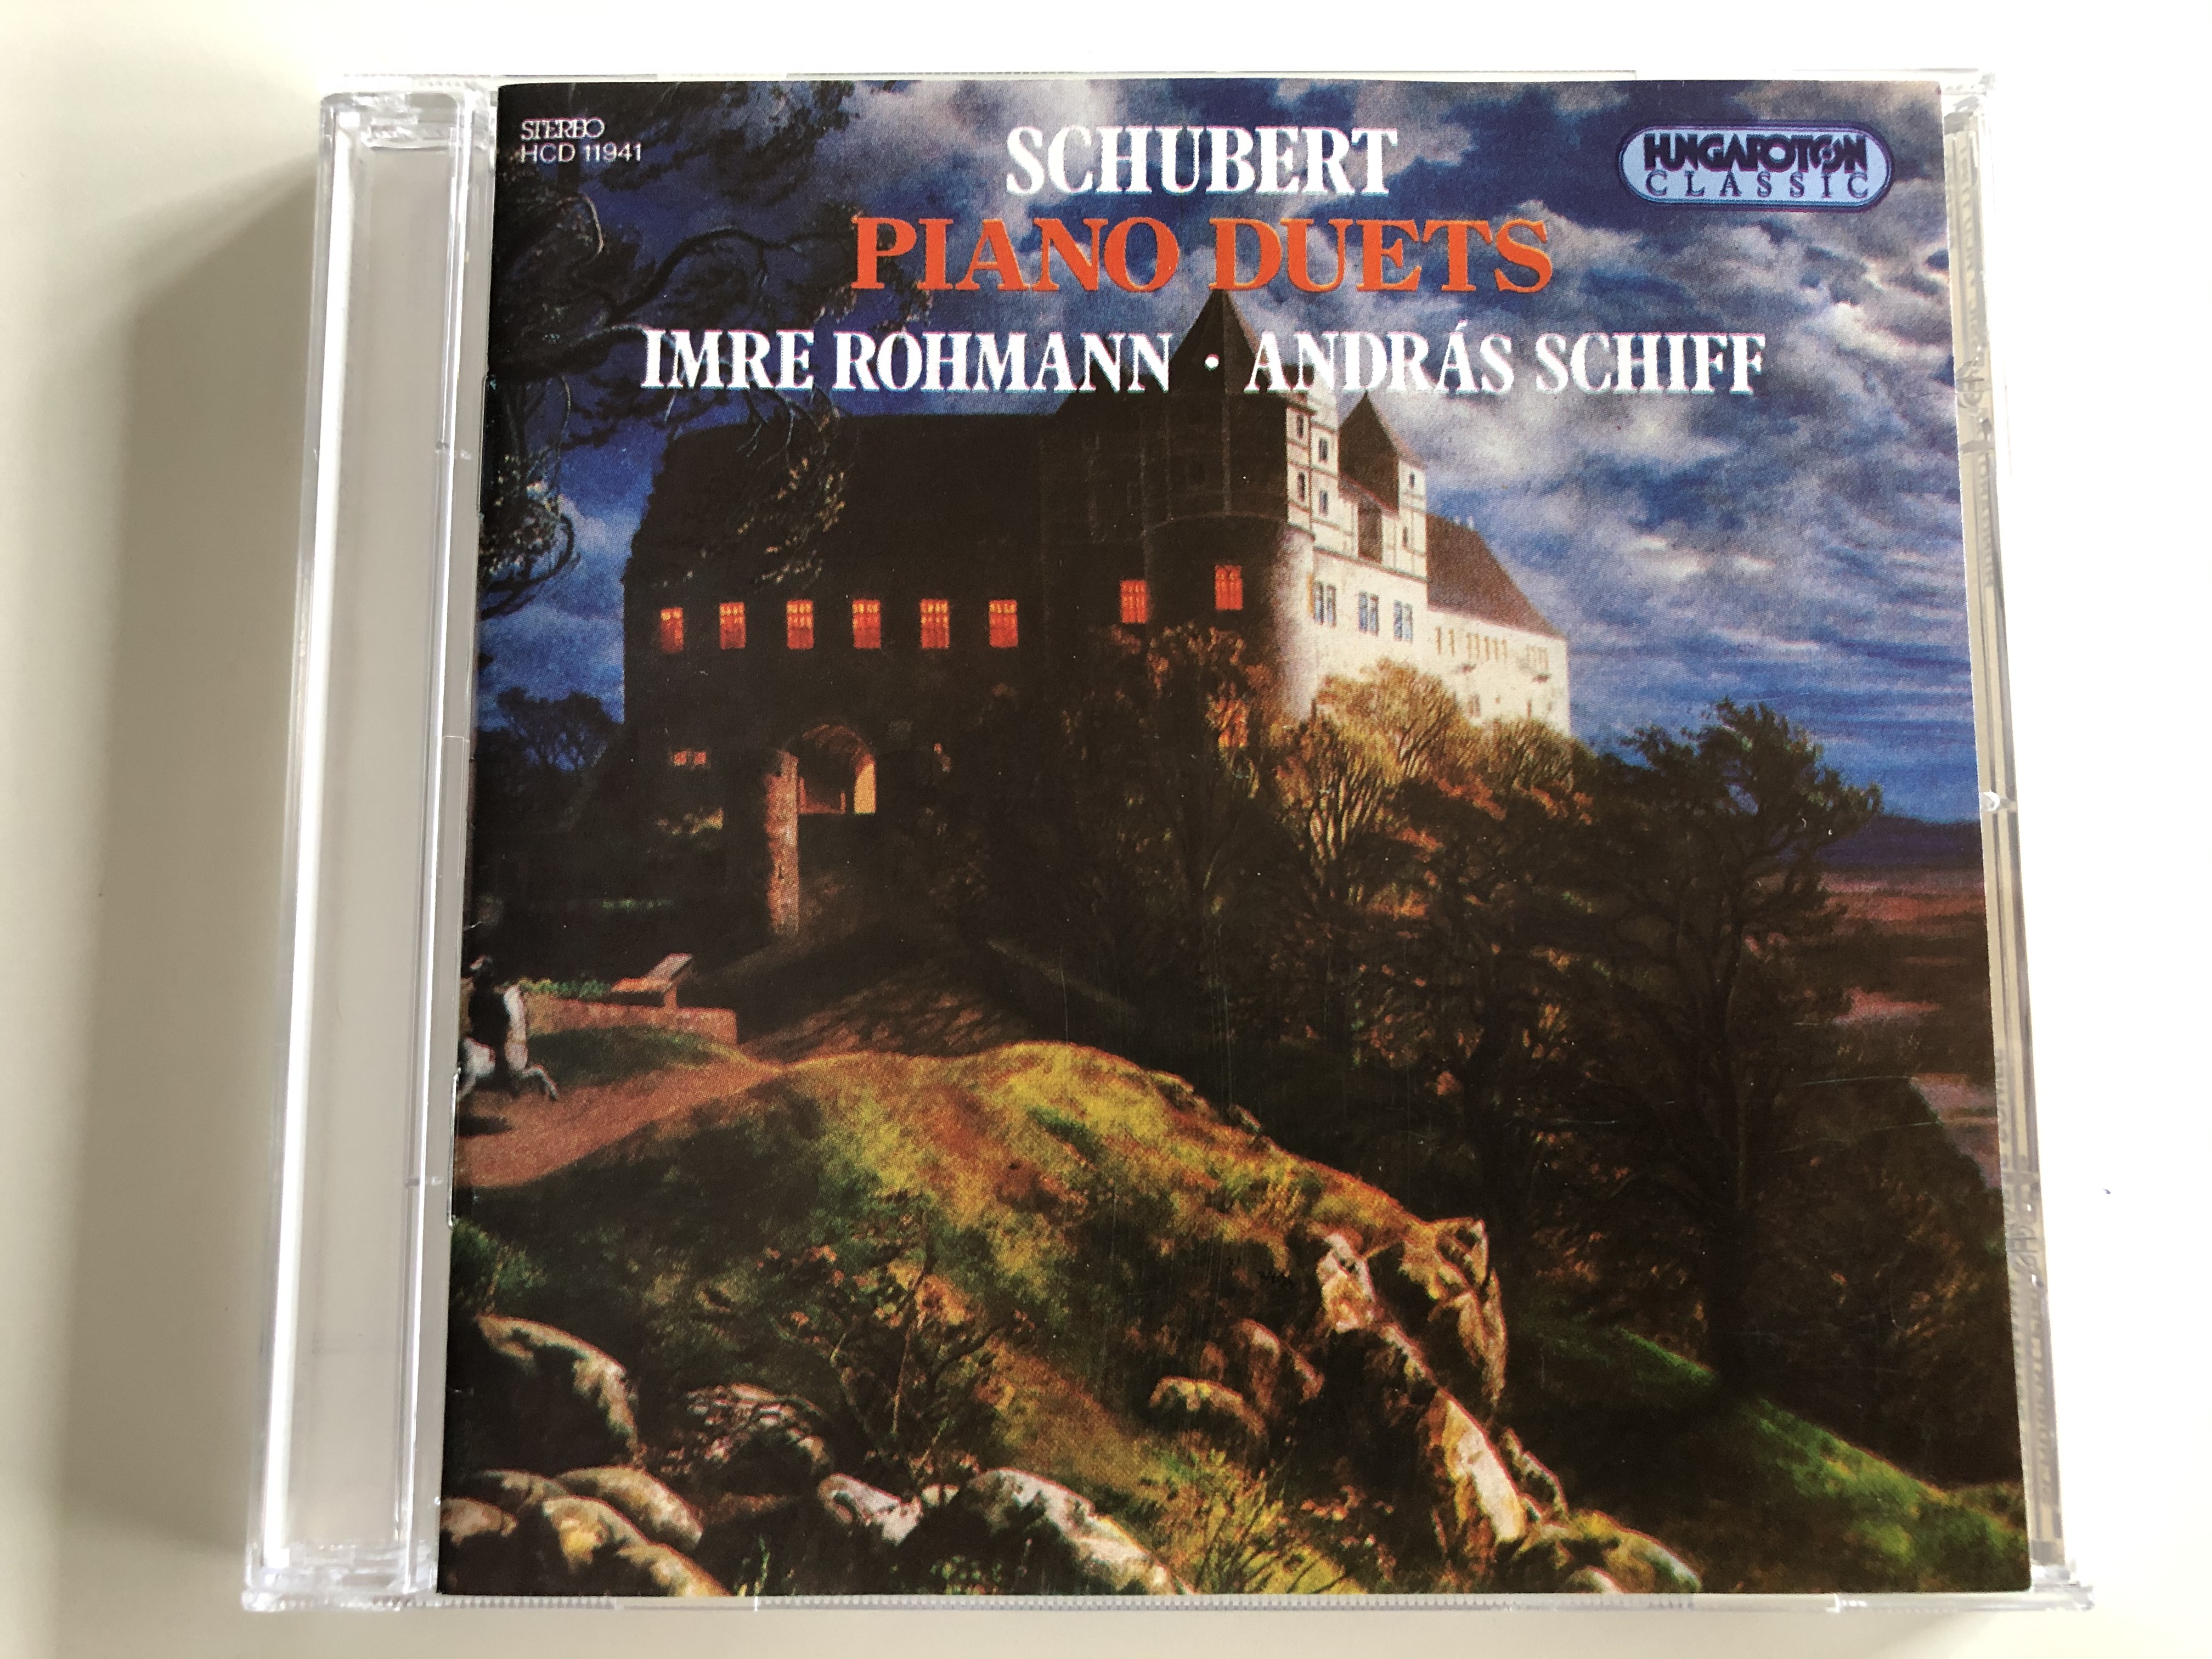 schubert-piano-duets-imre-rohmann-andr-s-schiff-hungaroton-classic-audio-cd-1995-stereo-hcd-11941-1-.jpg